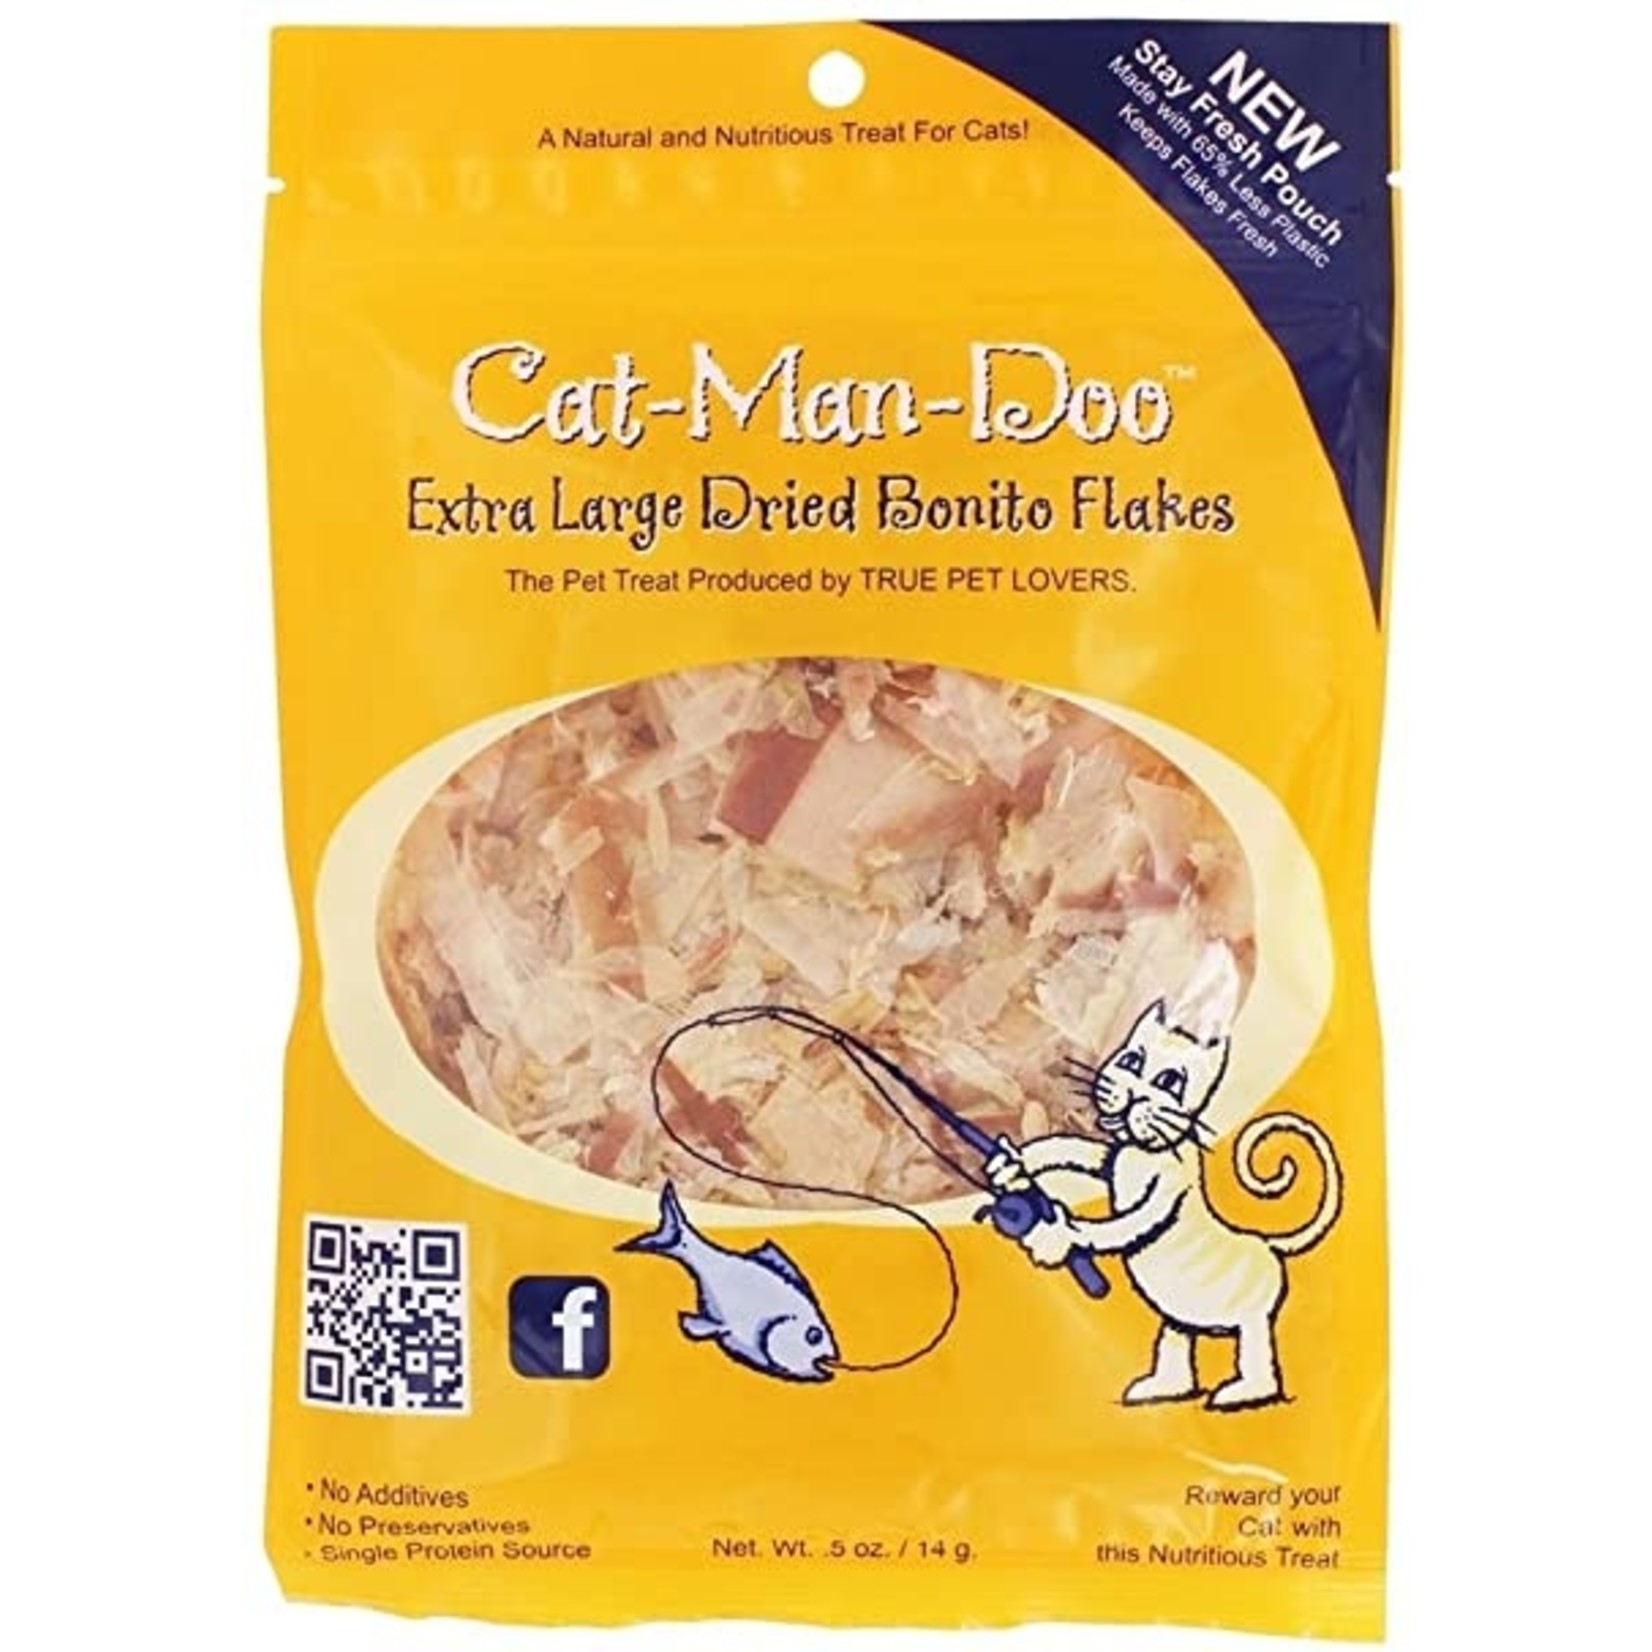 Catmandoo Cat-Man-Doo Extra Large Dried Bonito Flakes Cat Treat